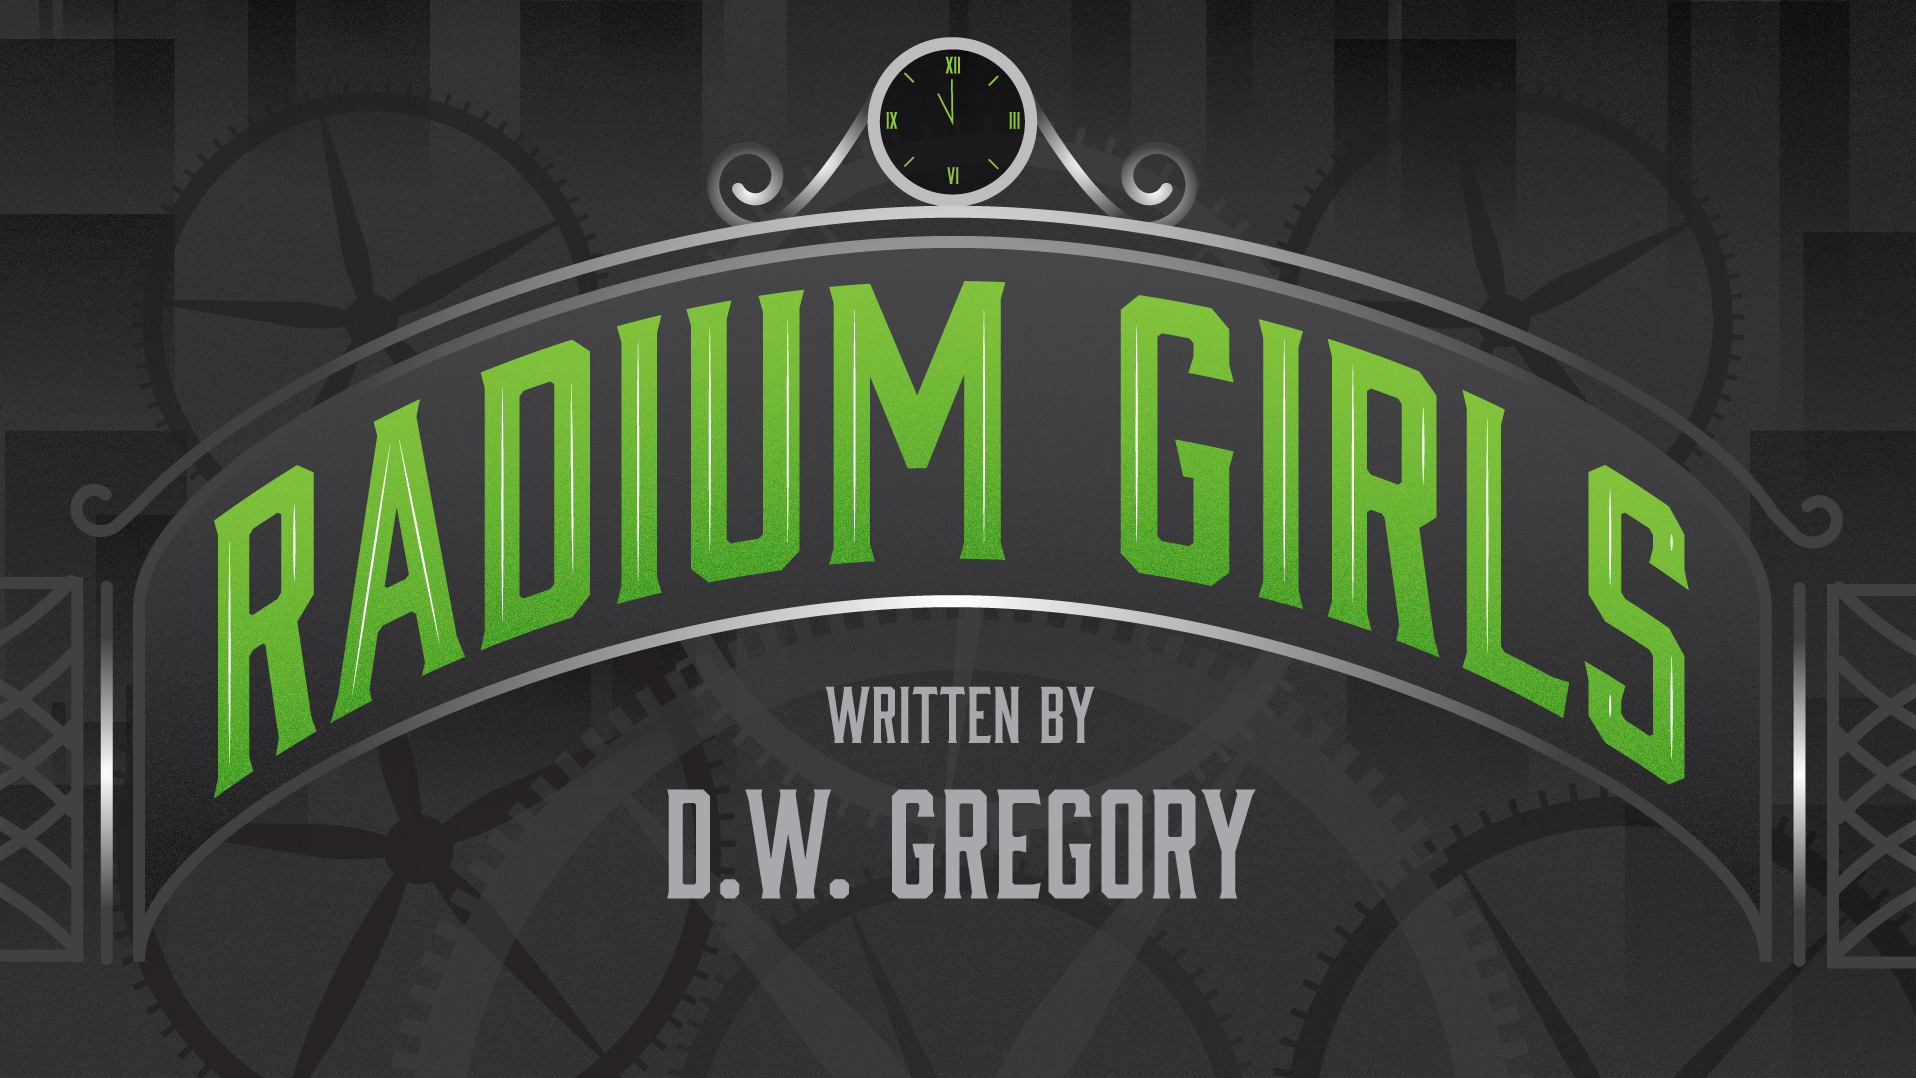 Radium Girls written by D.W. Gregory